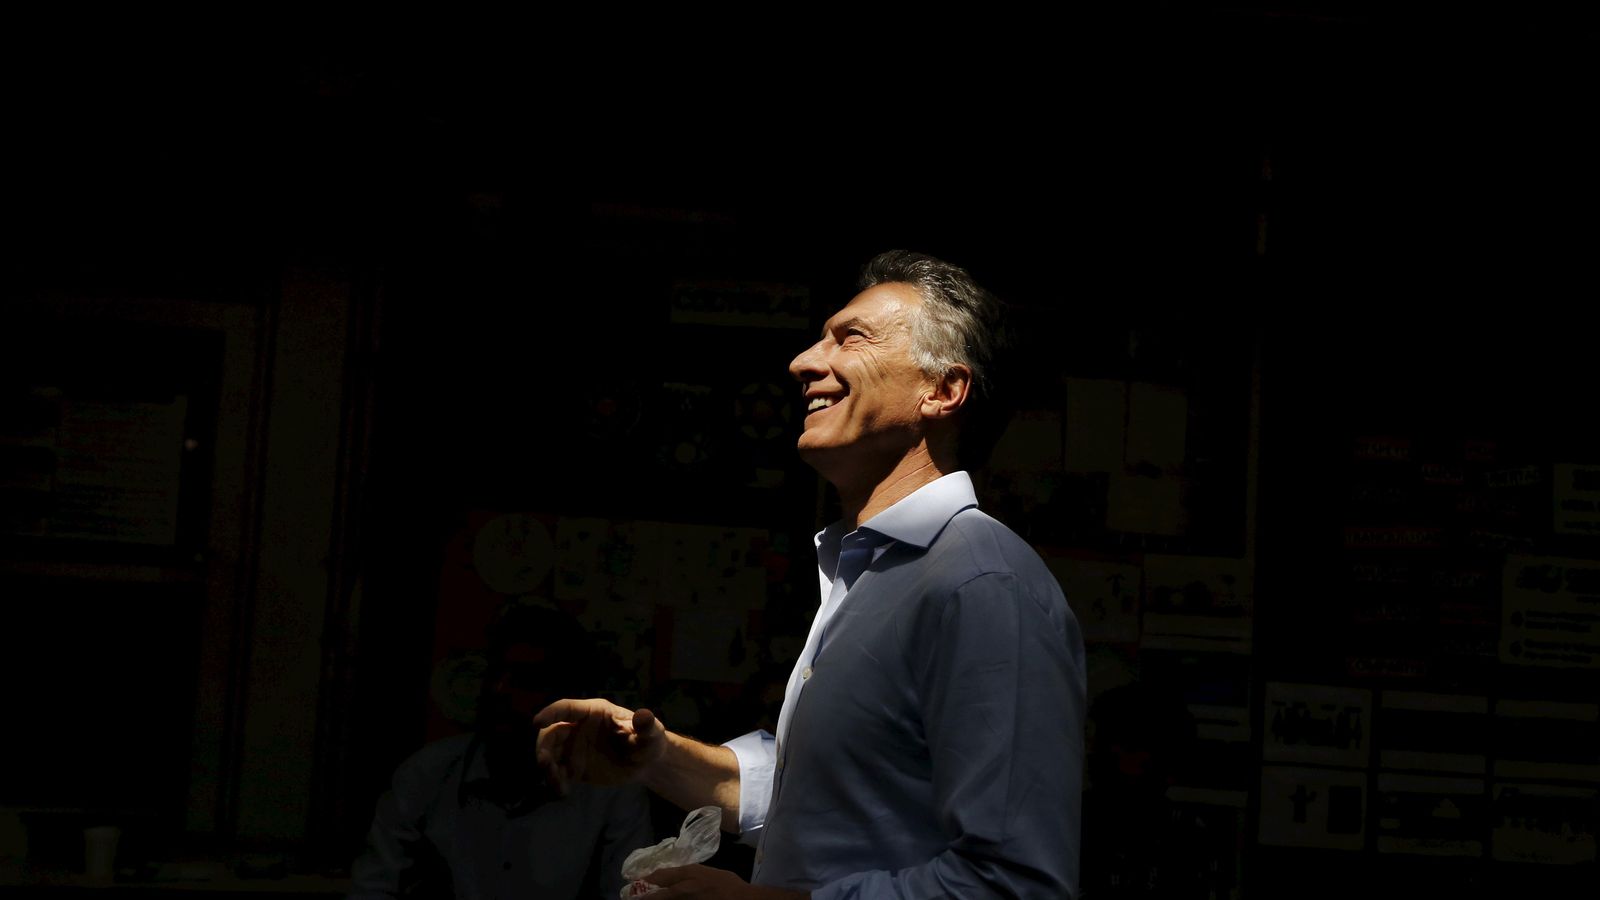 Foto: Mauricio Macri, vencedor de las elecciones argentinas, sonríe al llegar a un colegio electoral en Buenos Aires, el 22 de noviembre de 2015. (Reuters)